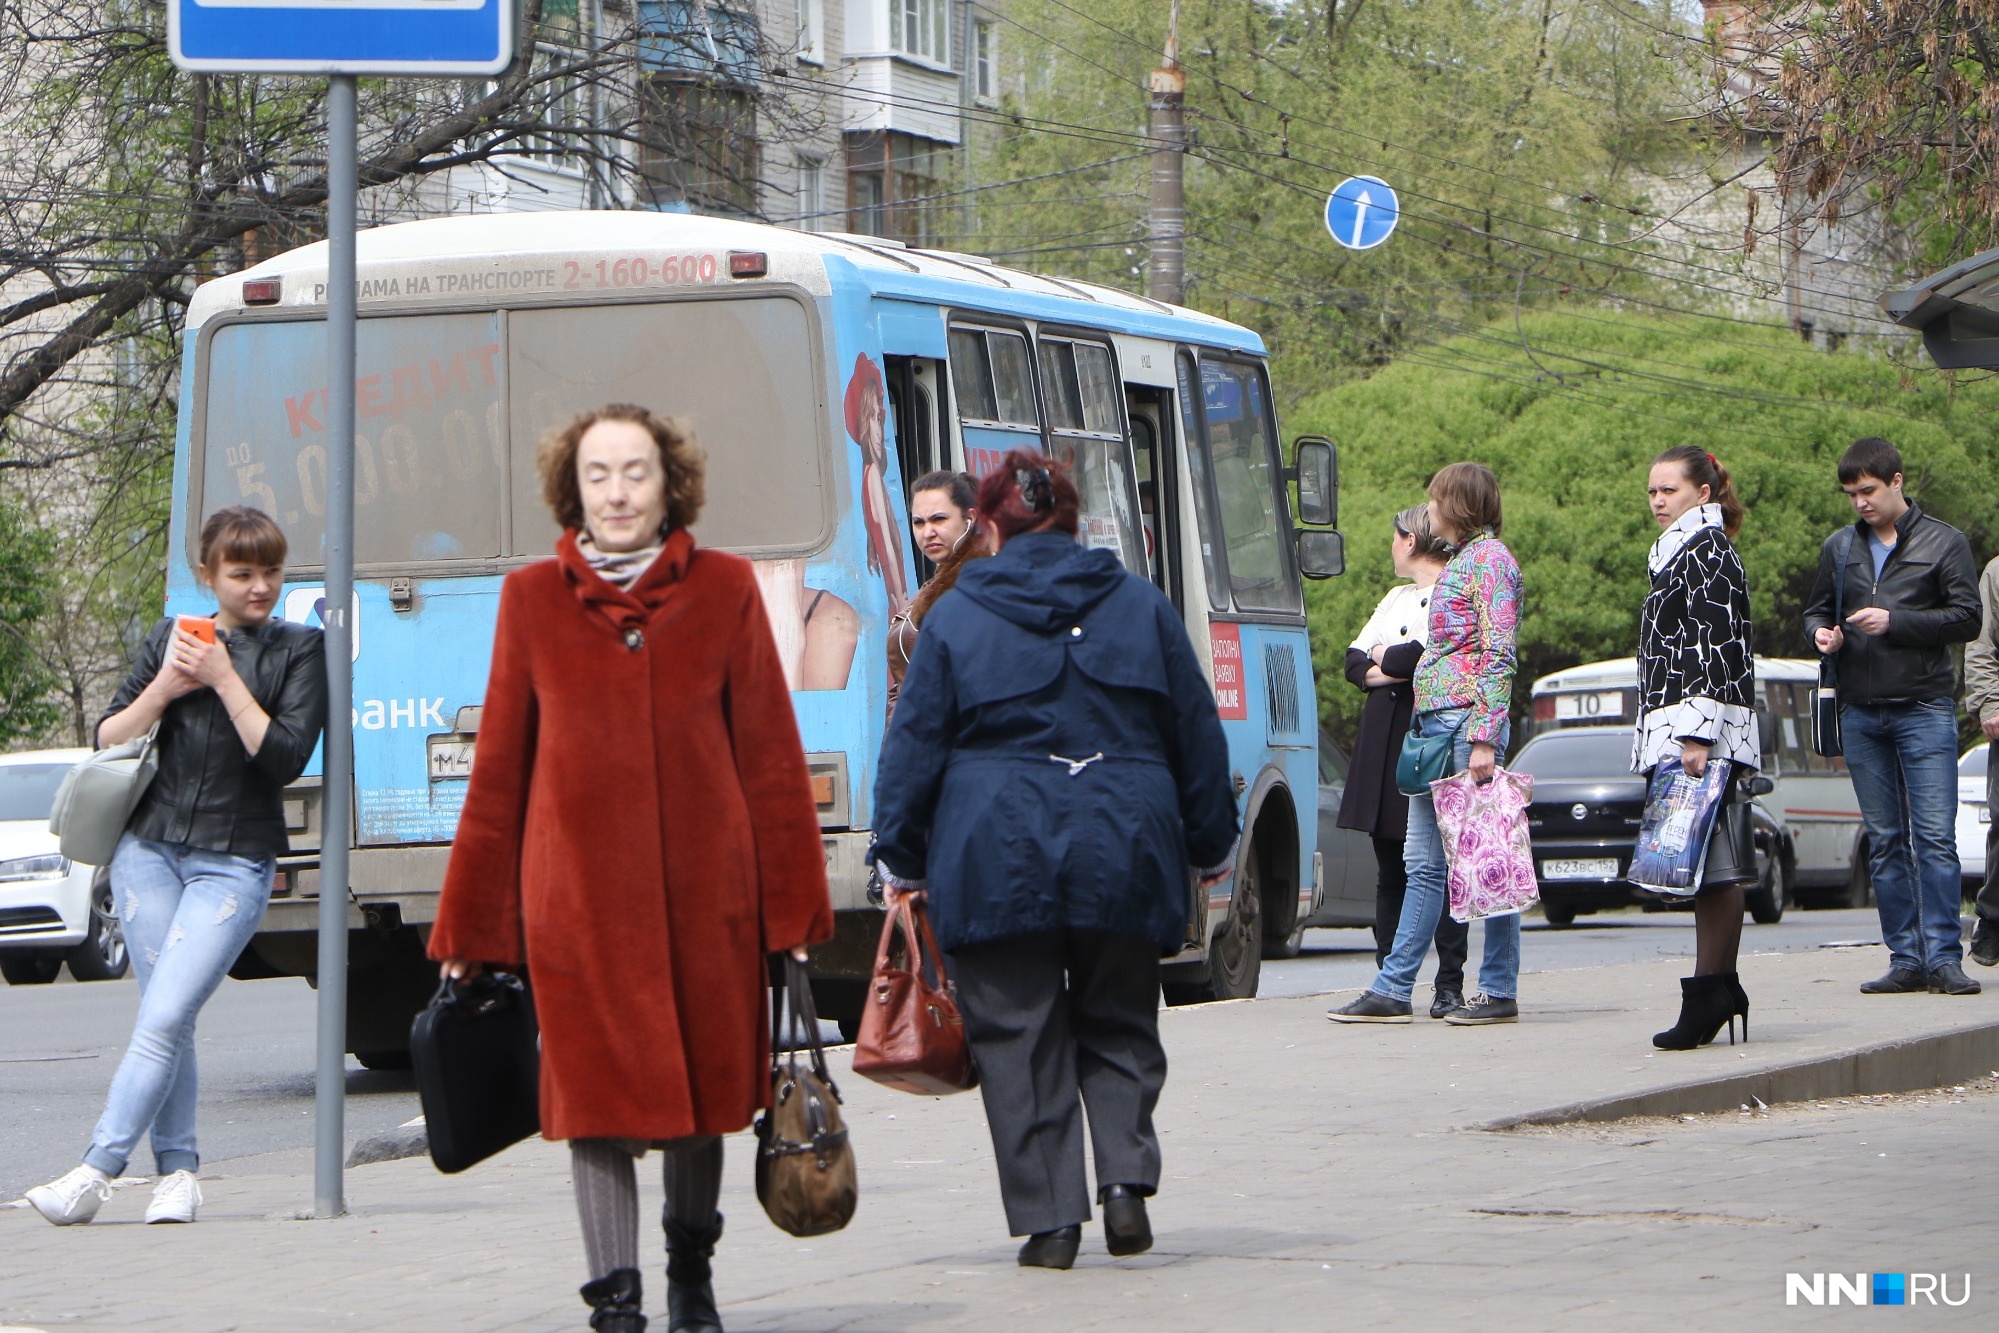 Внимание! Изменение движения автобусов 83 маршрута в Нижнем Новгороде